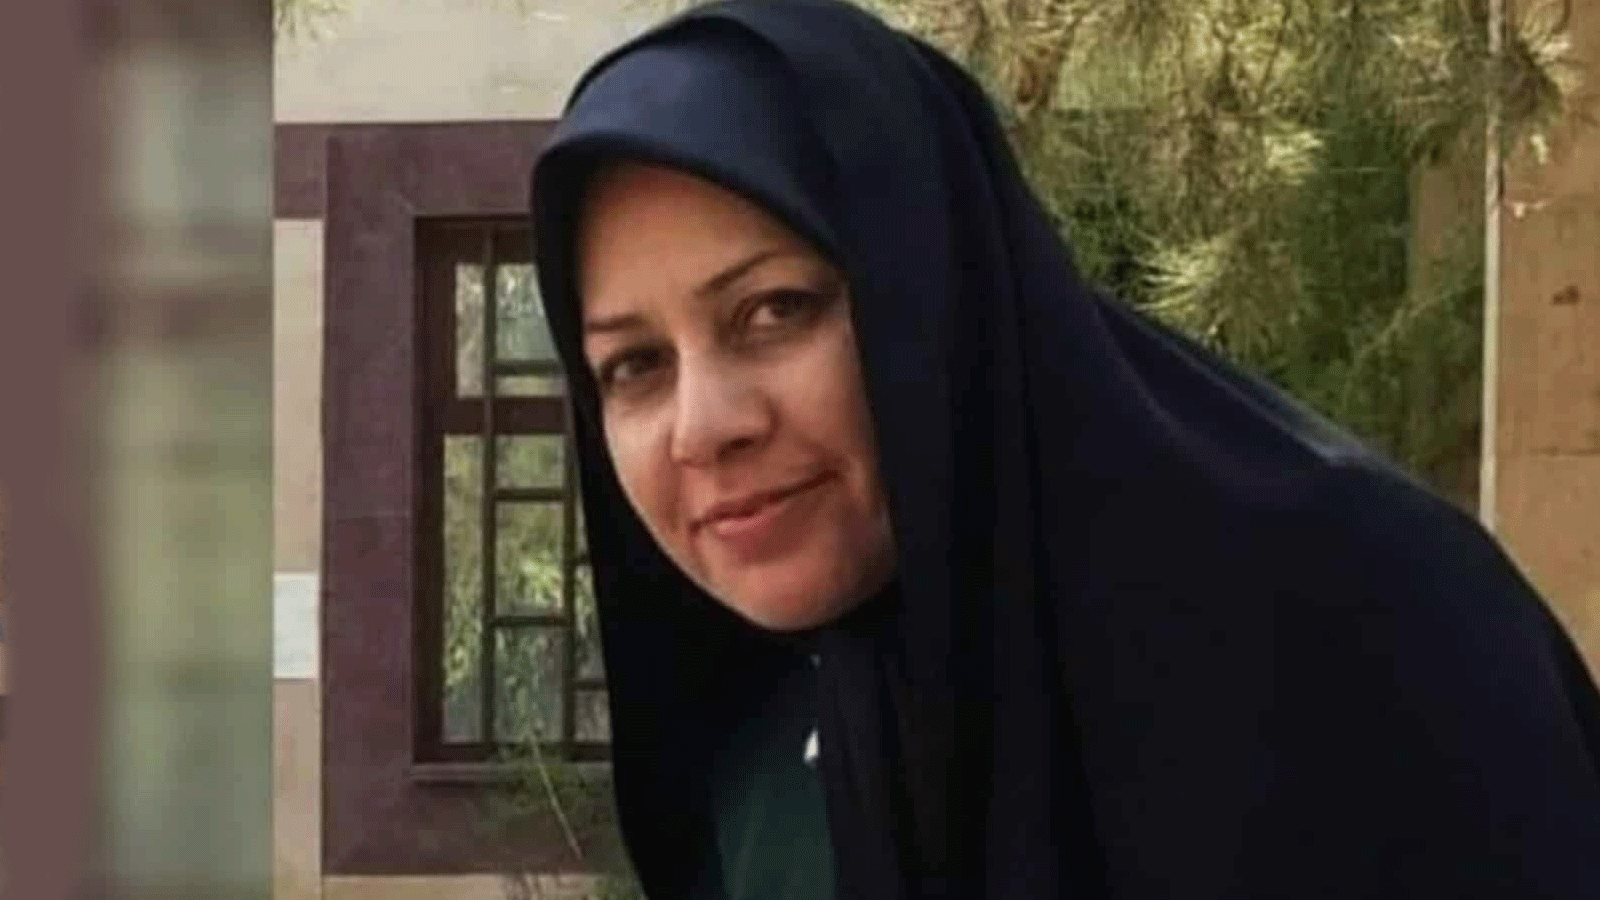  الناشطة المدنية فريدة مرادخاني، ابنة بدرية حسيني خامنئي، شقيقة المرشد الأعلى الإيراني(تويتر)